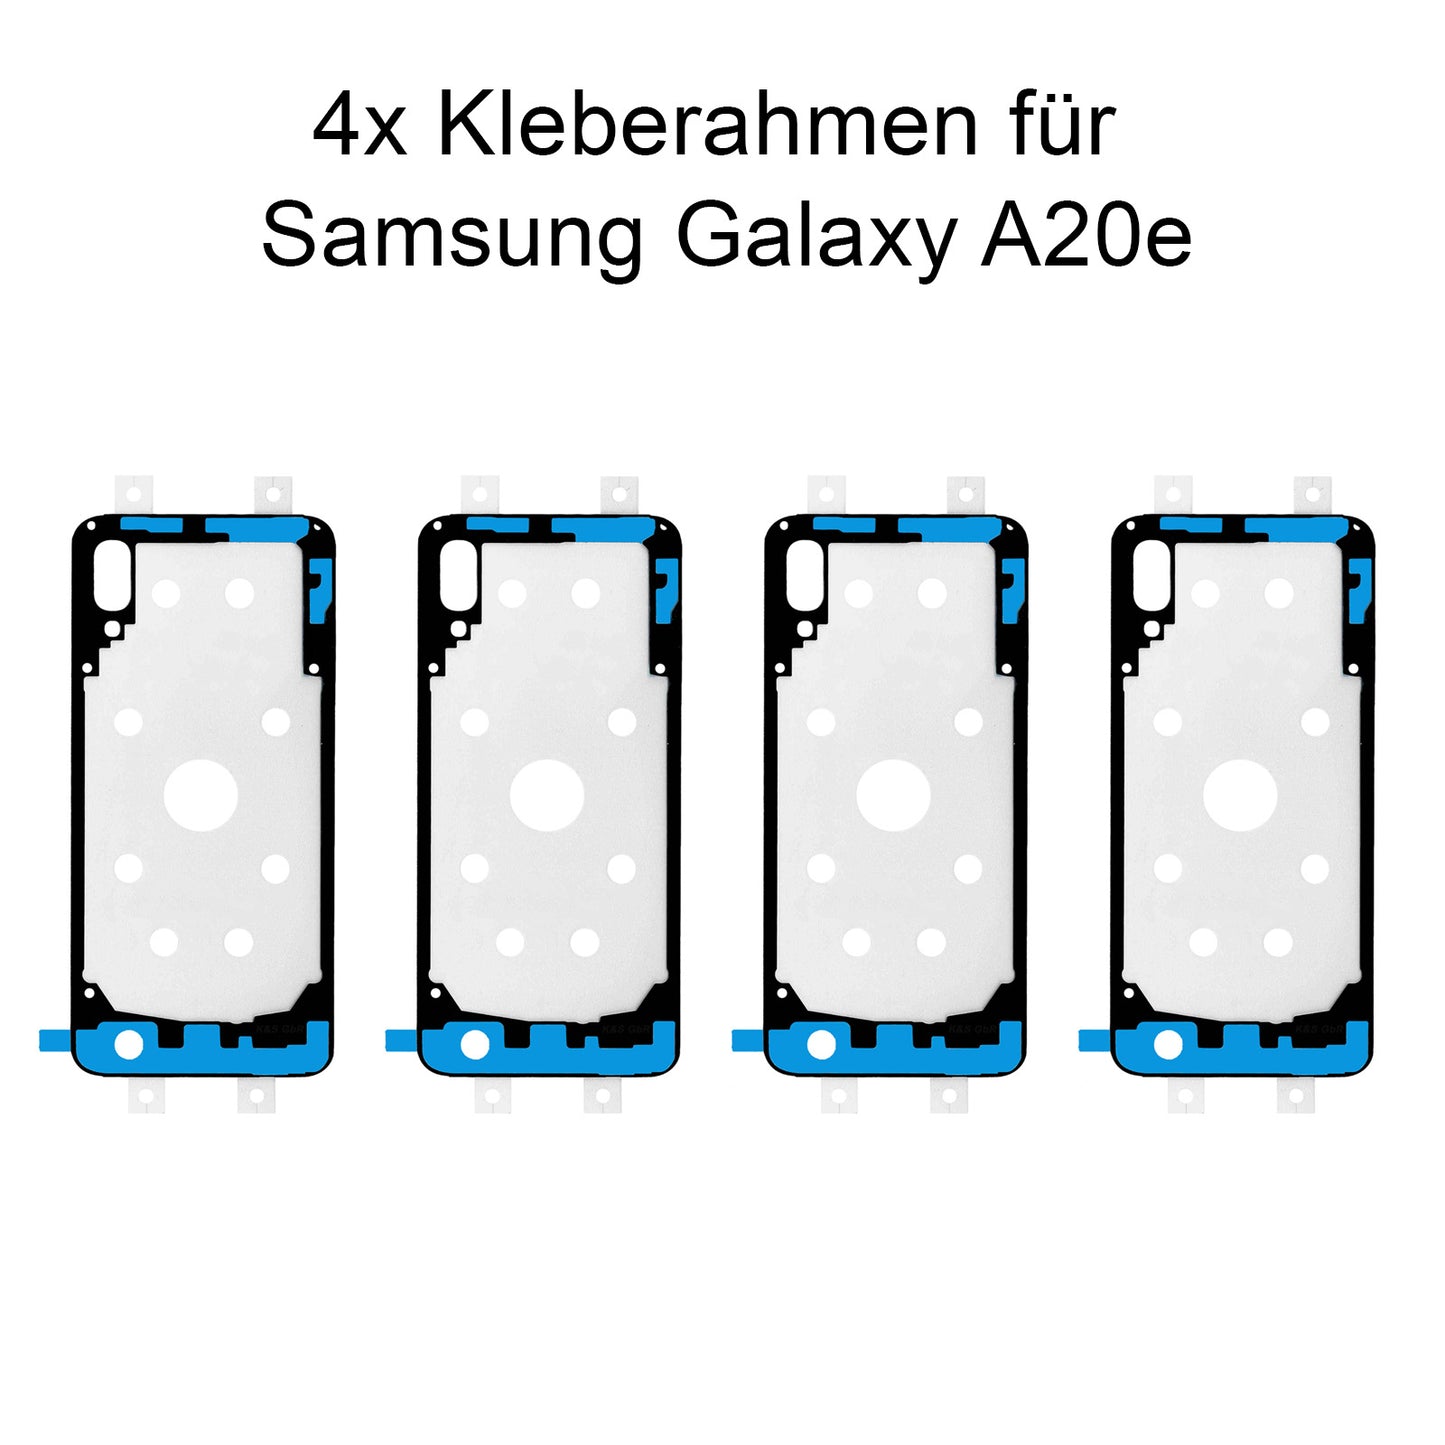 4x Kleberahmen für das Samsung Galaxy A20e, SM-A202. Klebepad, Adhesive Wasser Dichtung, im Dinngs Onlineshop entdecken und bestellen!